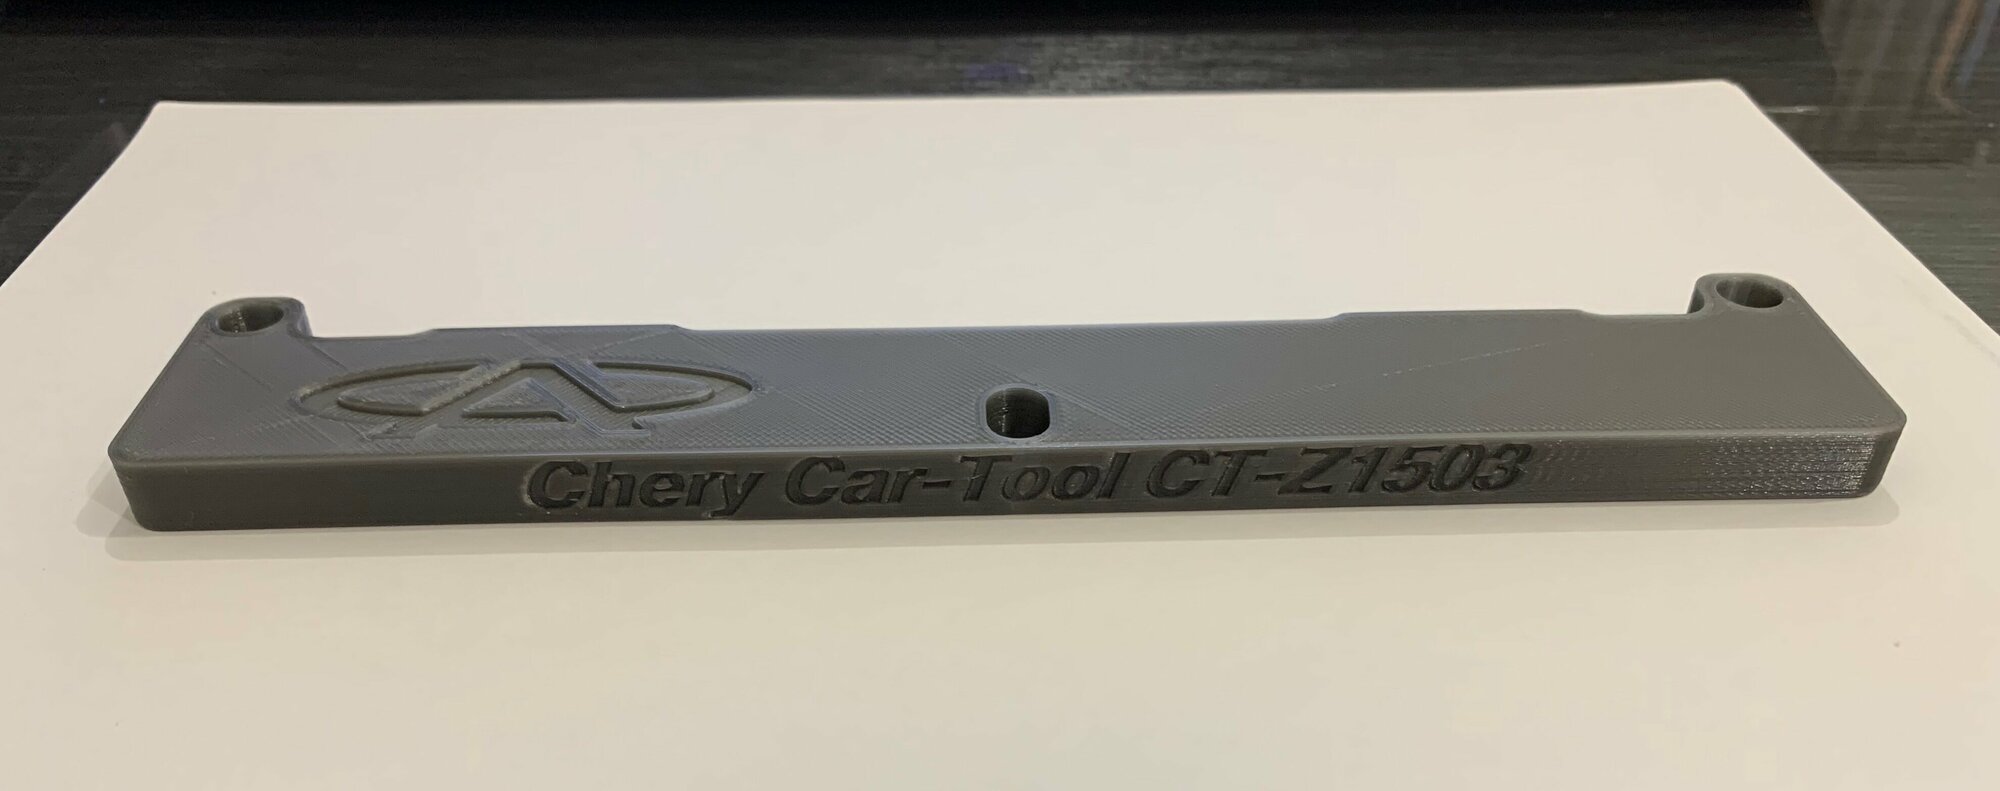 Шаблон для установки грм Chery Car-Tool CT-Z1503